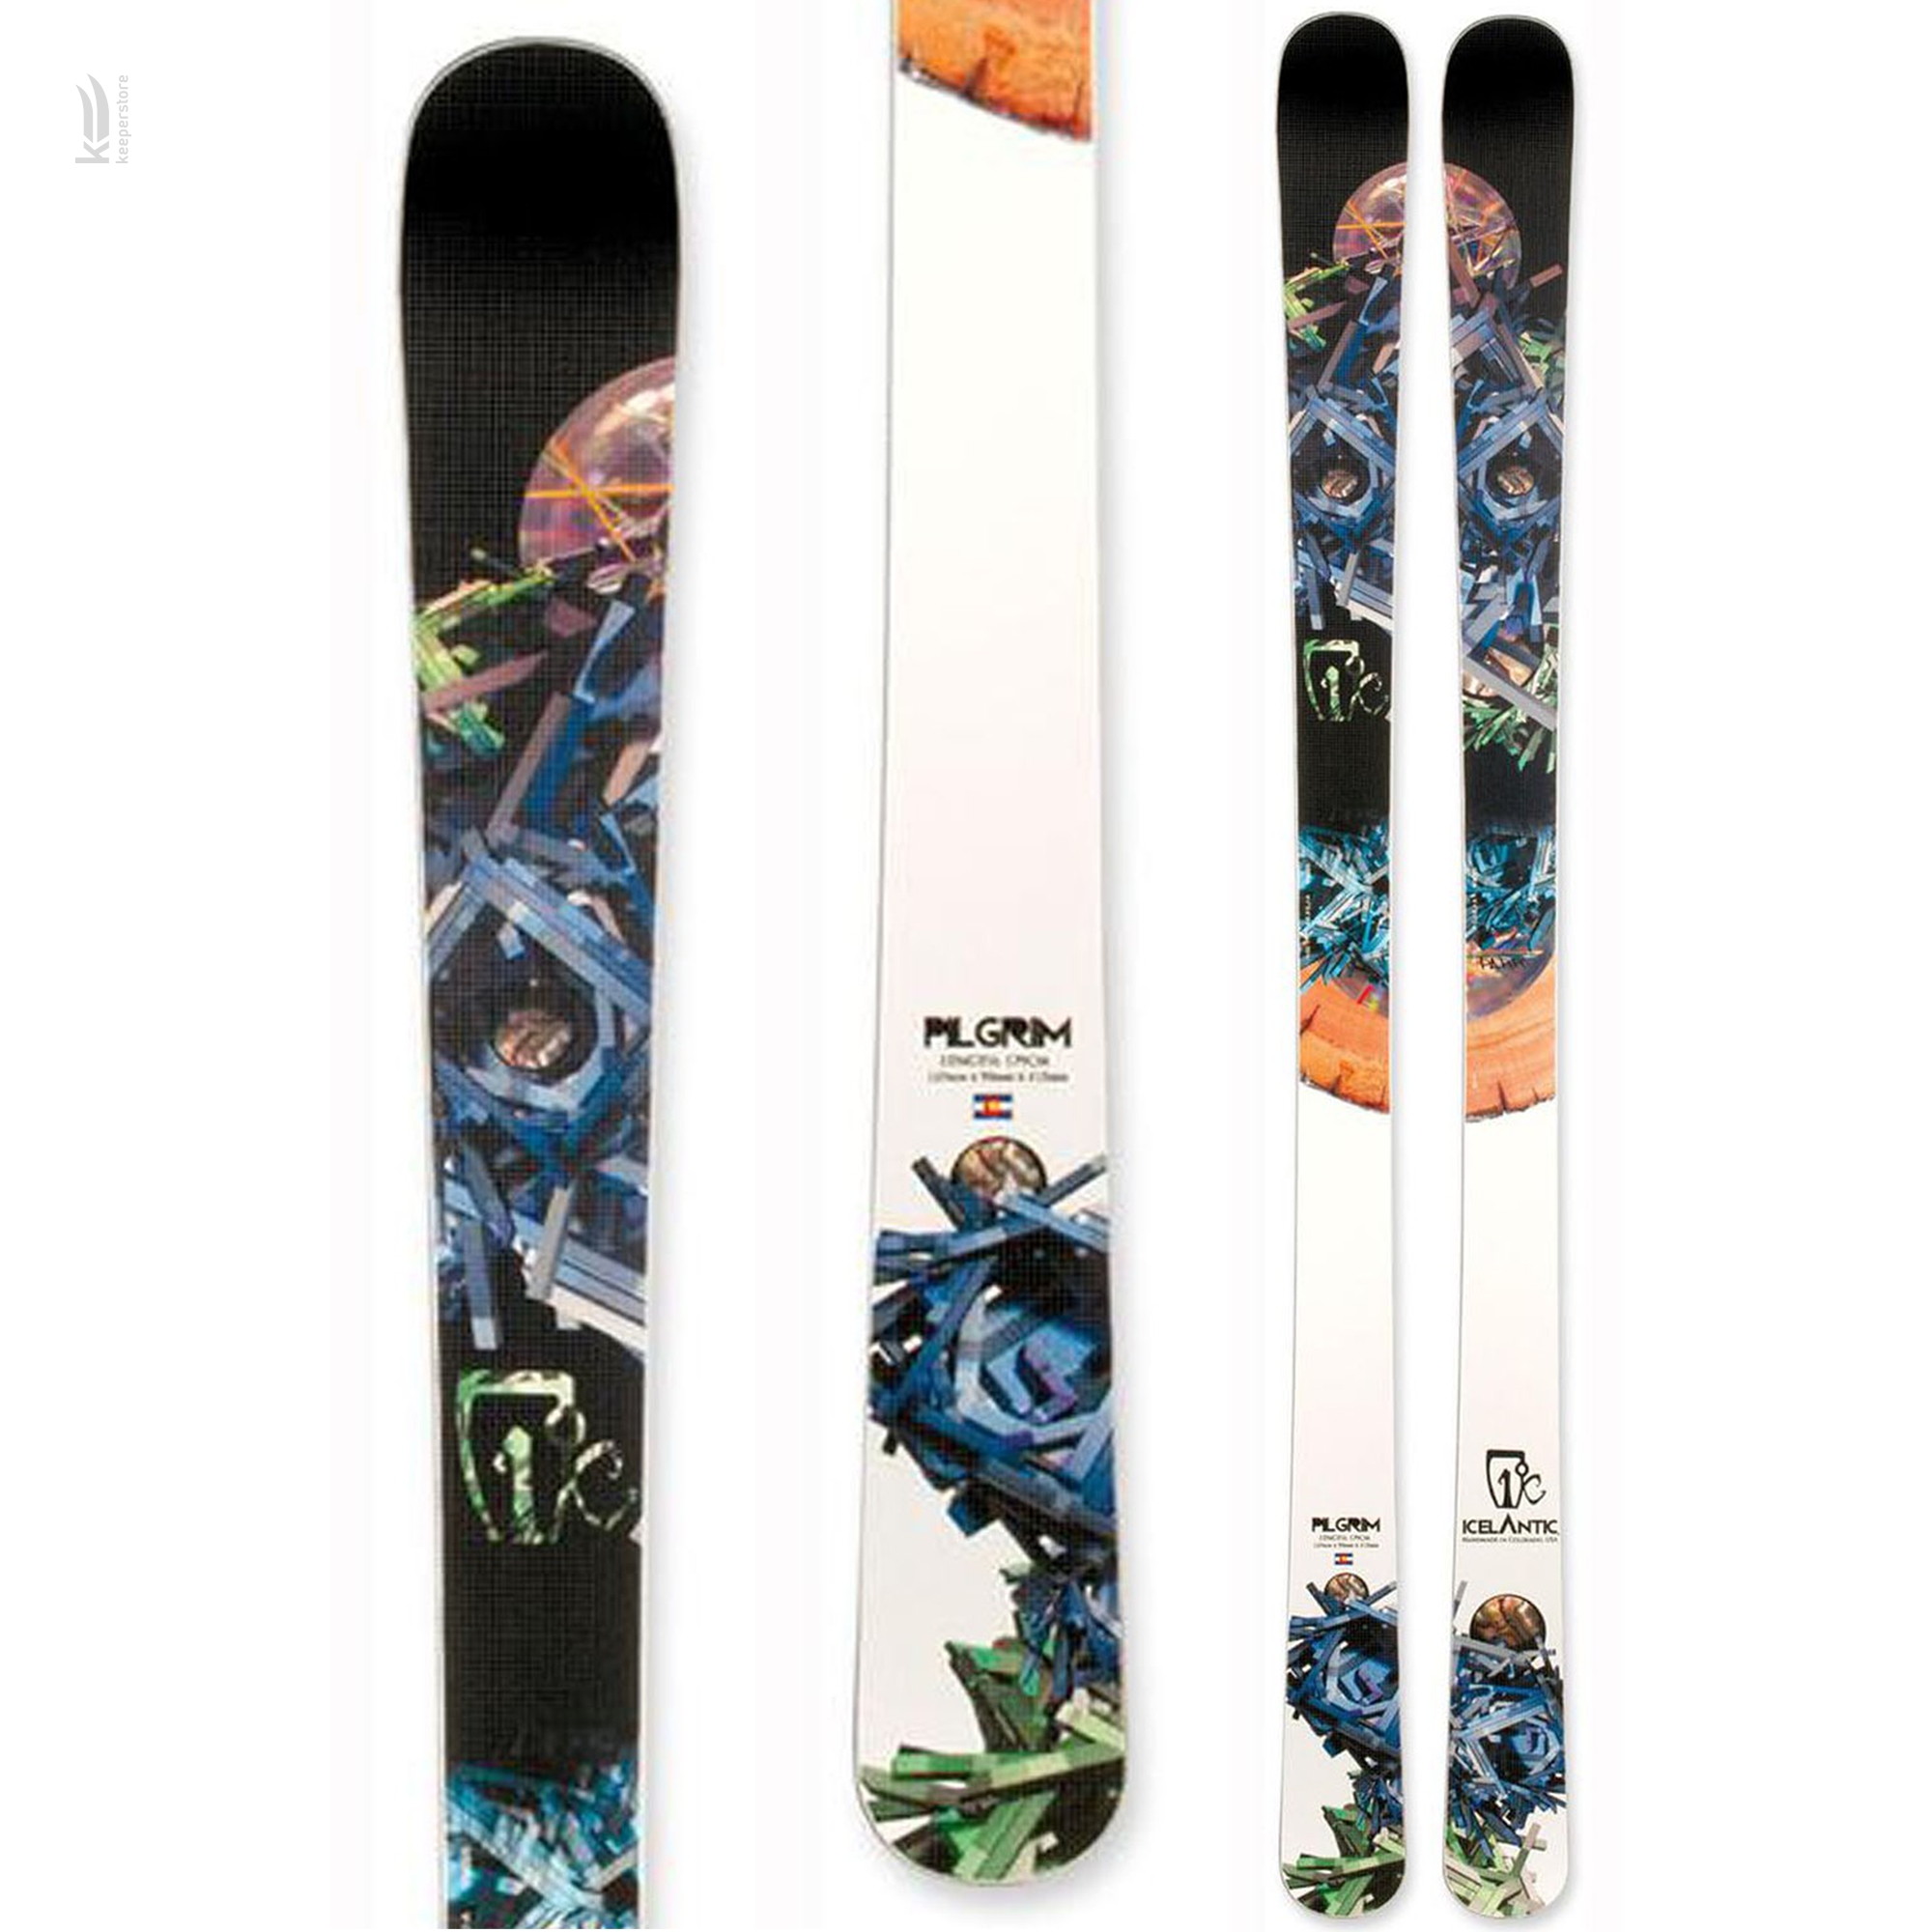 Купить лыжи для карвинга Icelantic Pilgrim SKNY 75 2013/2014 169cm в Киеве